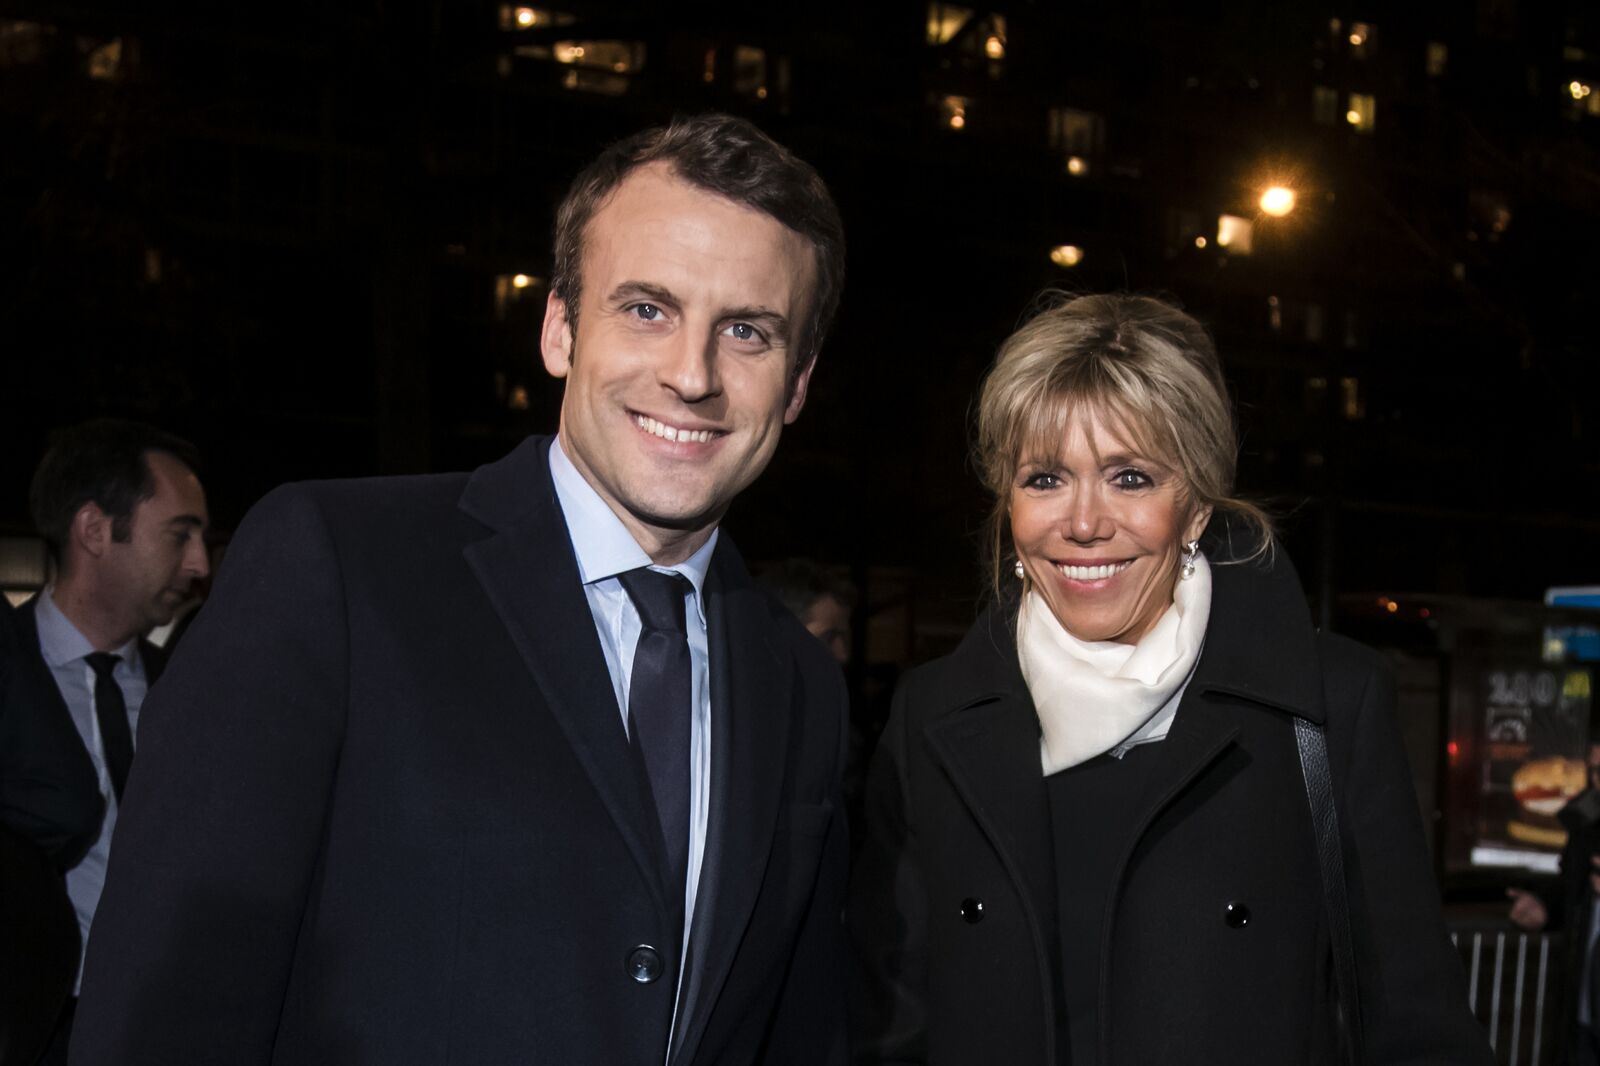 Emmanuel Macron et son épouse Brigitte assistent au dîner traditionnel du Crif, le conseil représentatif des institutions juives de France à l'hôtel Pullman à Montparnasse le 22 février 2017 à Paris, France. | Photo : Getty Images